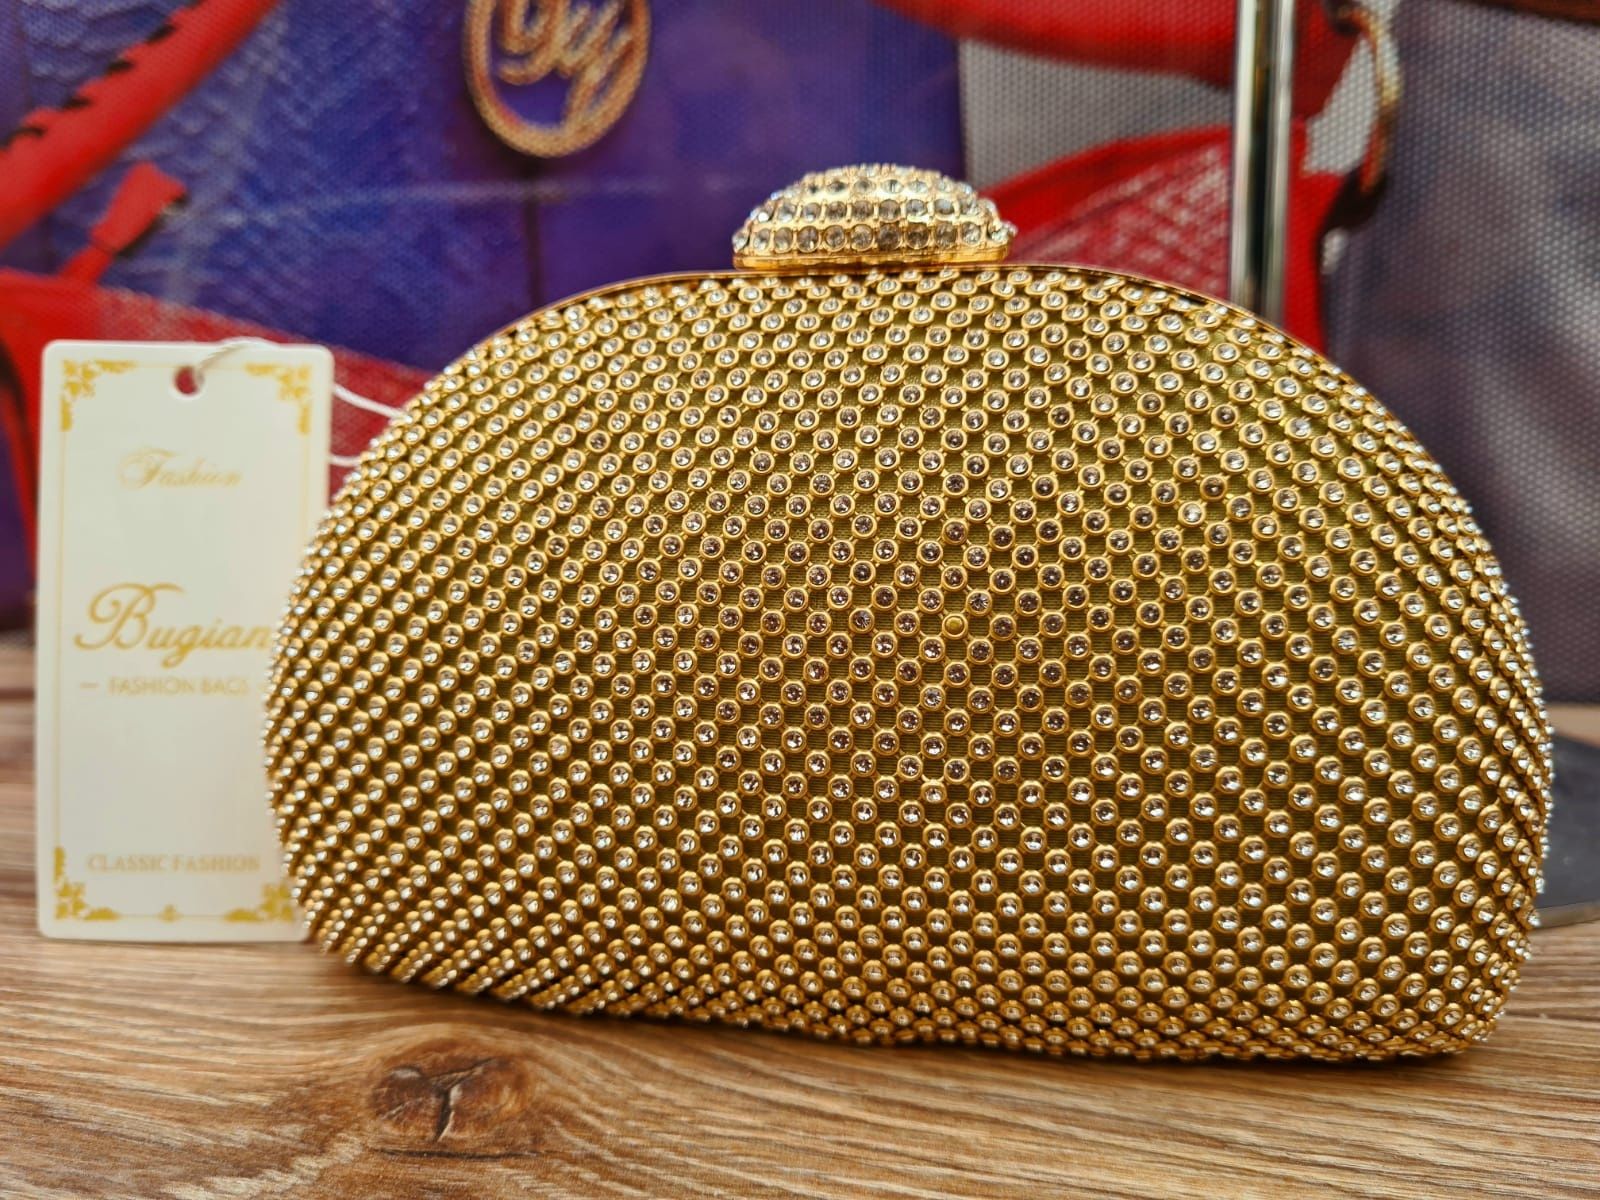 Nowa złota piękna torebka Kopertówka z cyrkoniami Bugiani